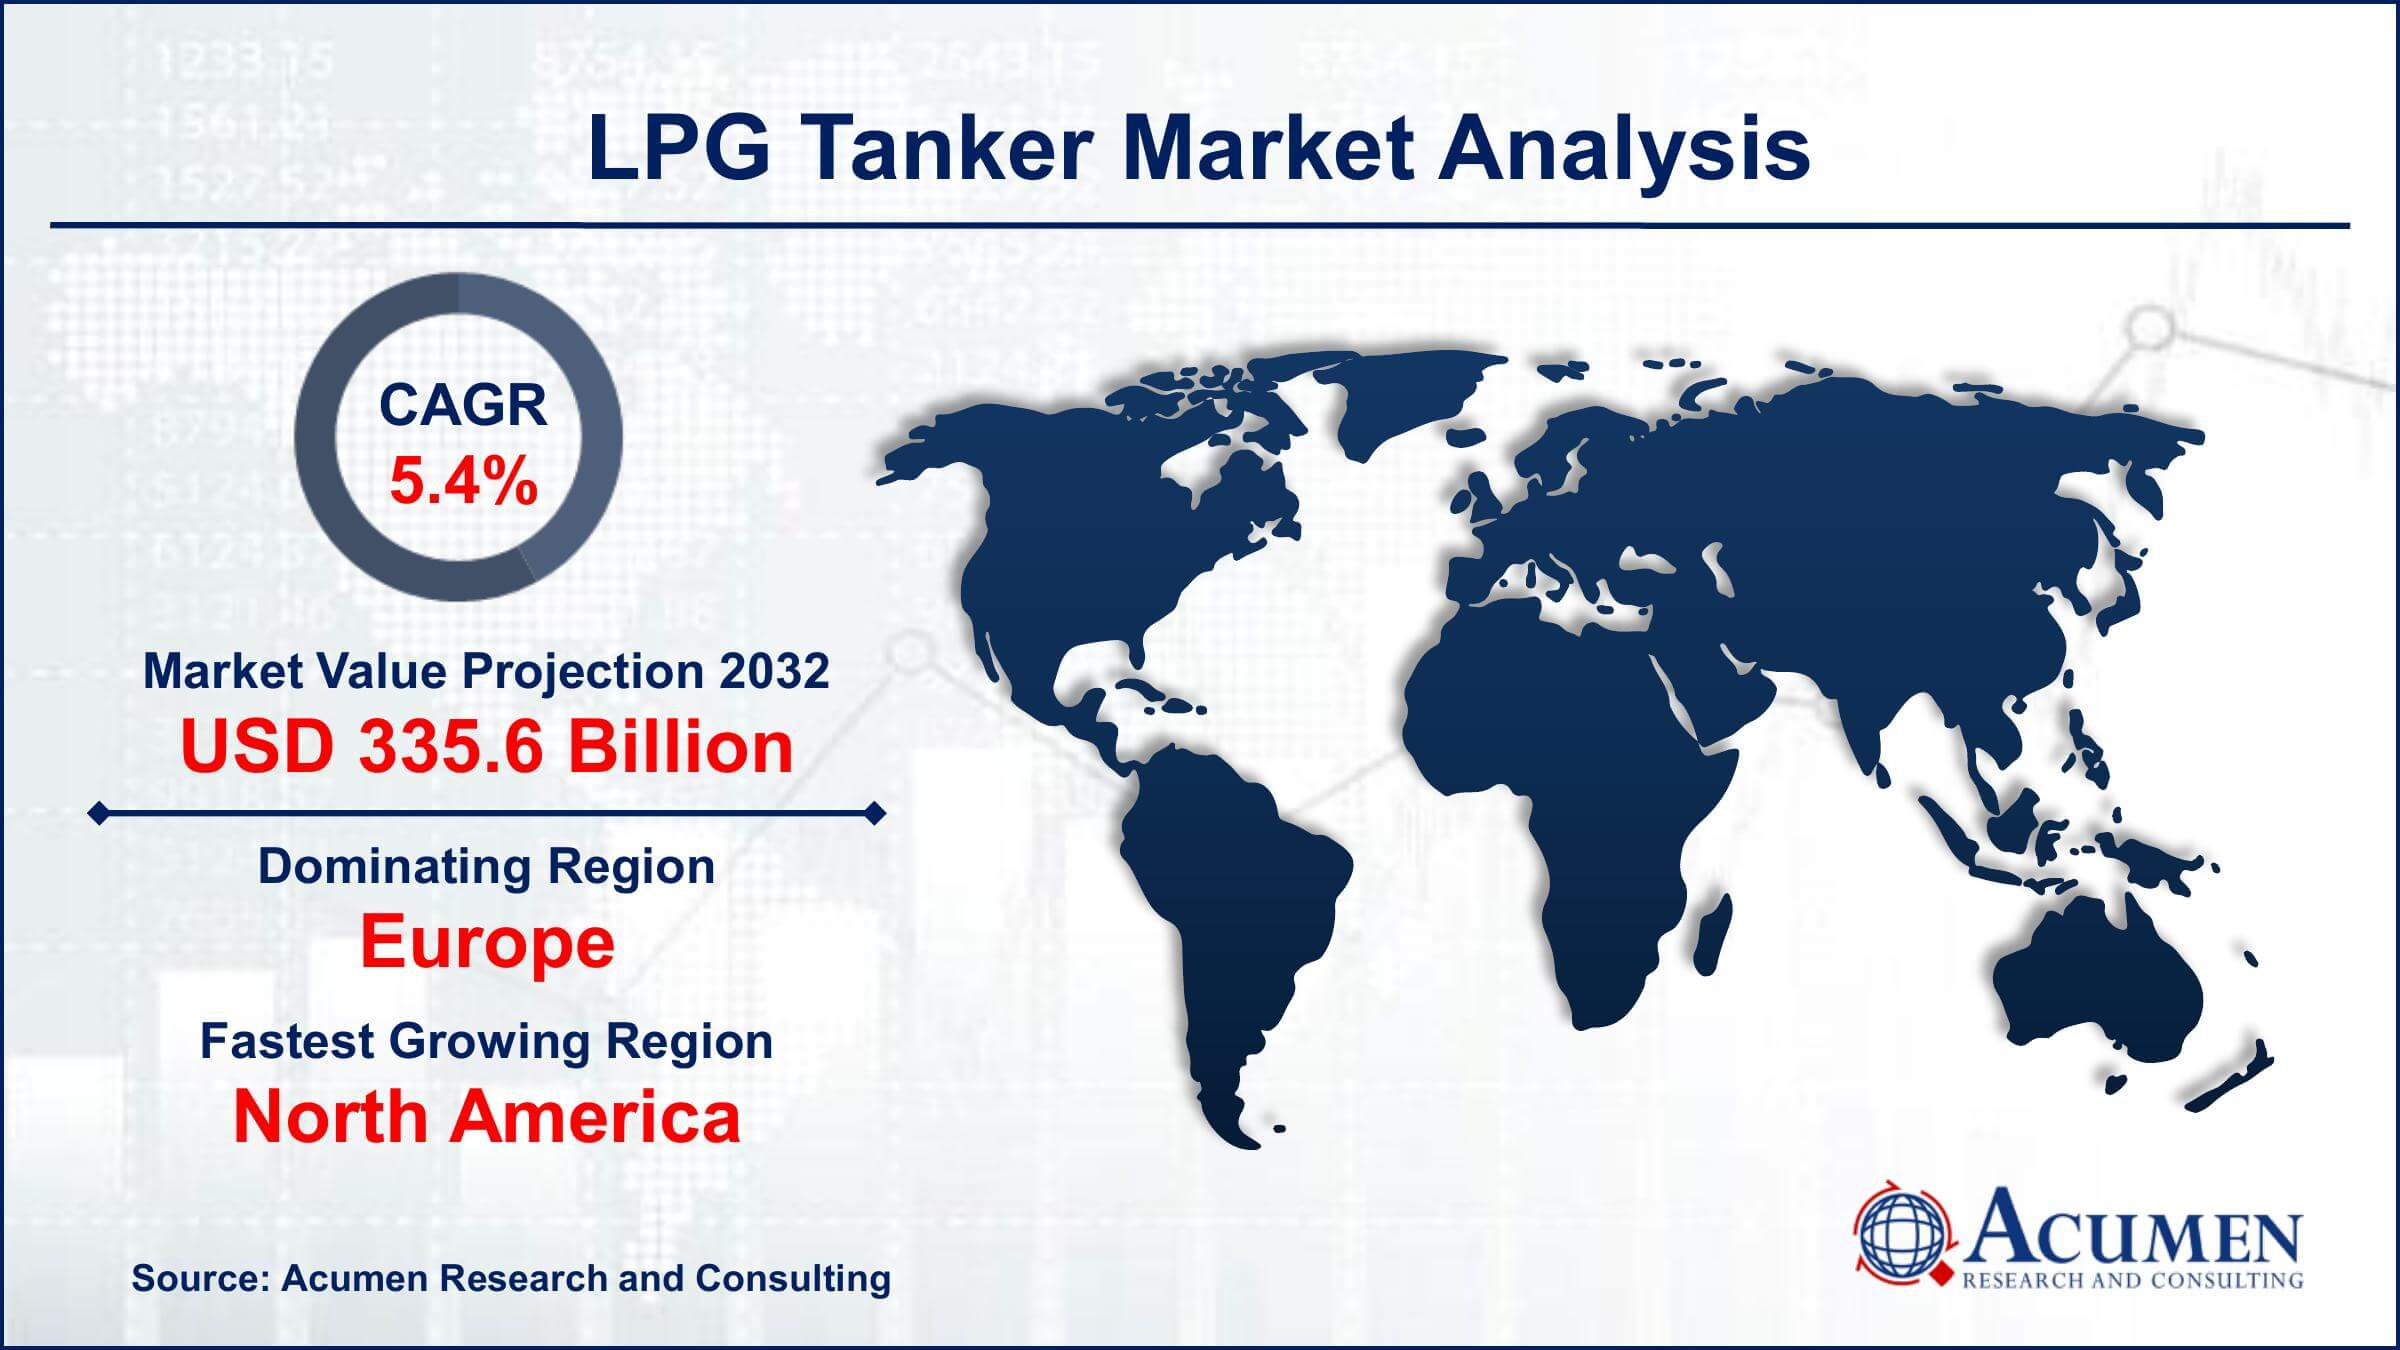 Global LPG Tanker Market Trends